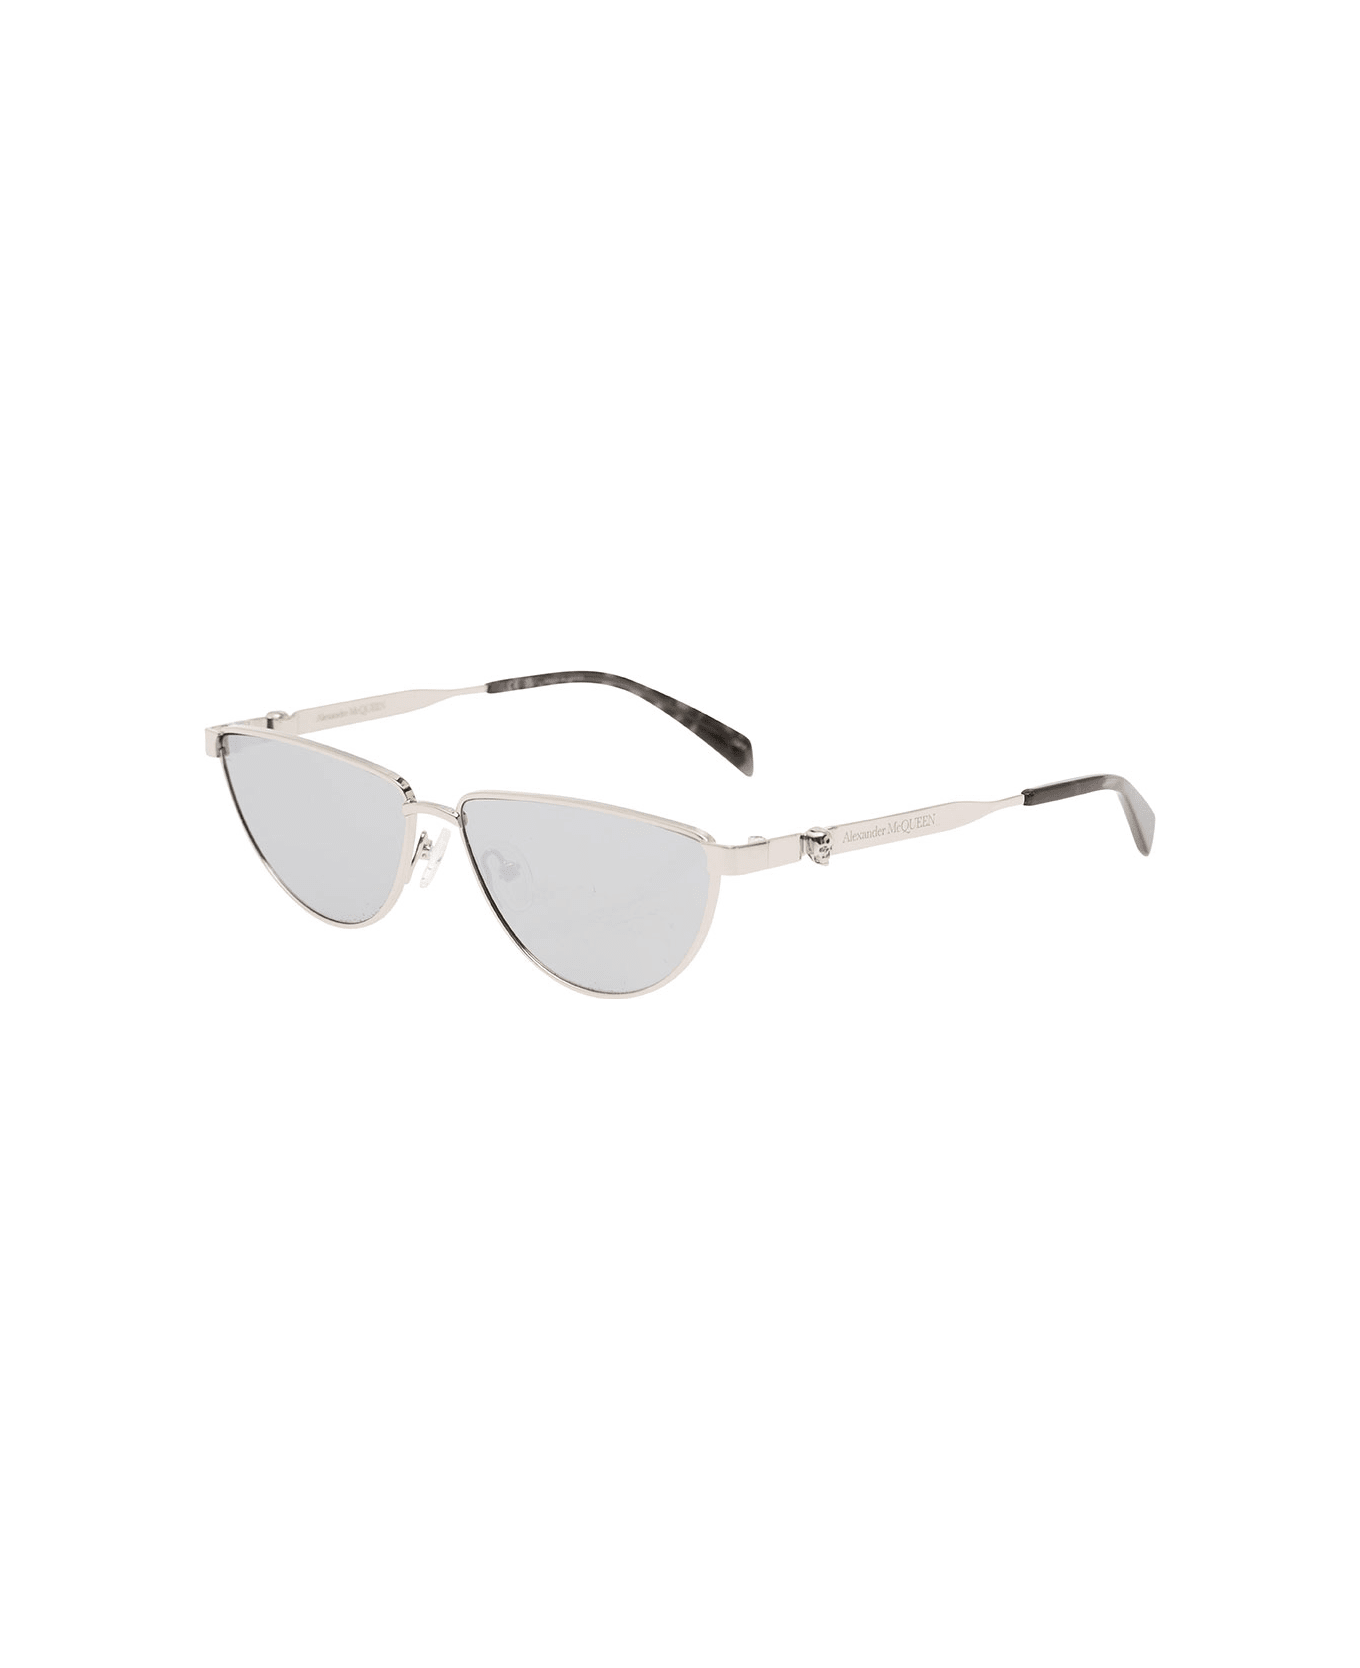 Alexander McQueen Sunglasses With Metal Frame - Metallic